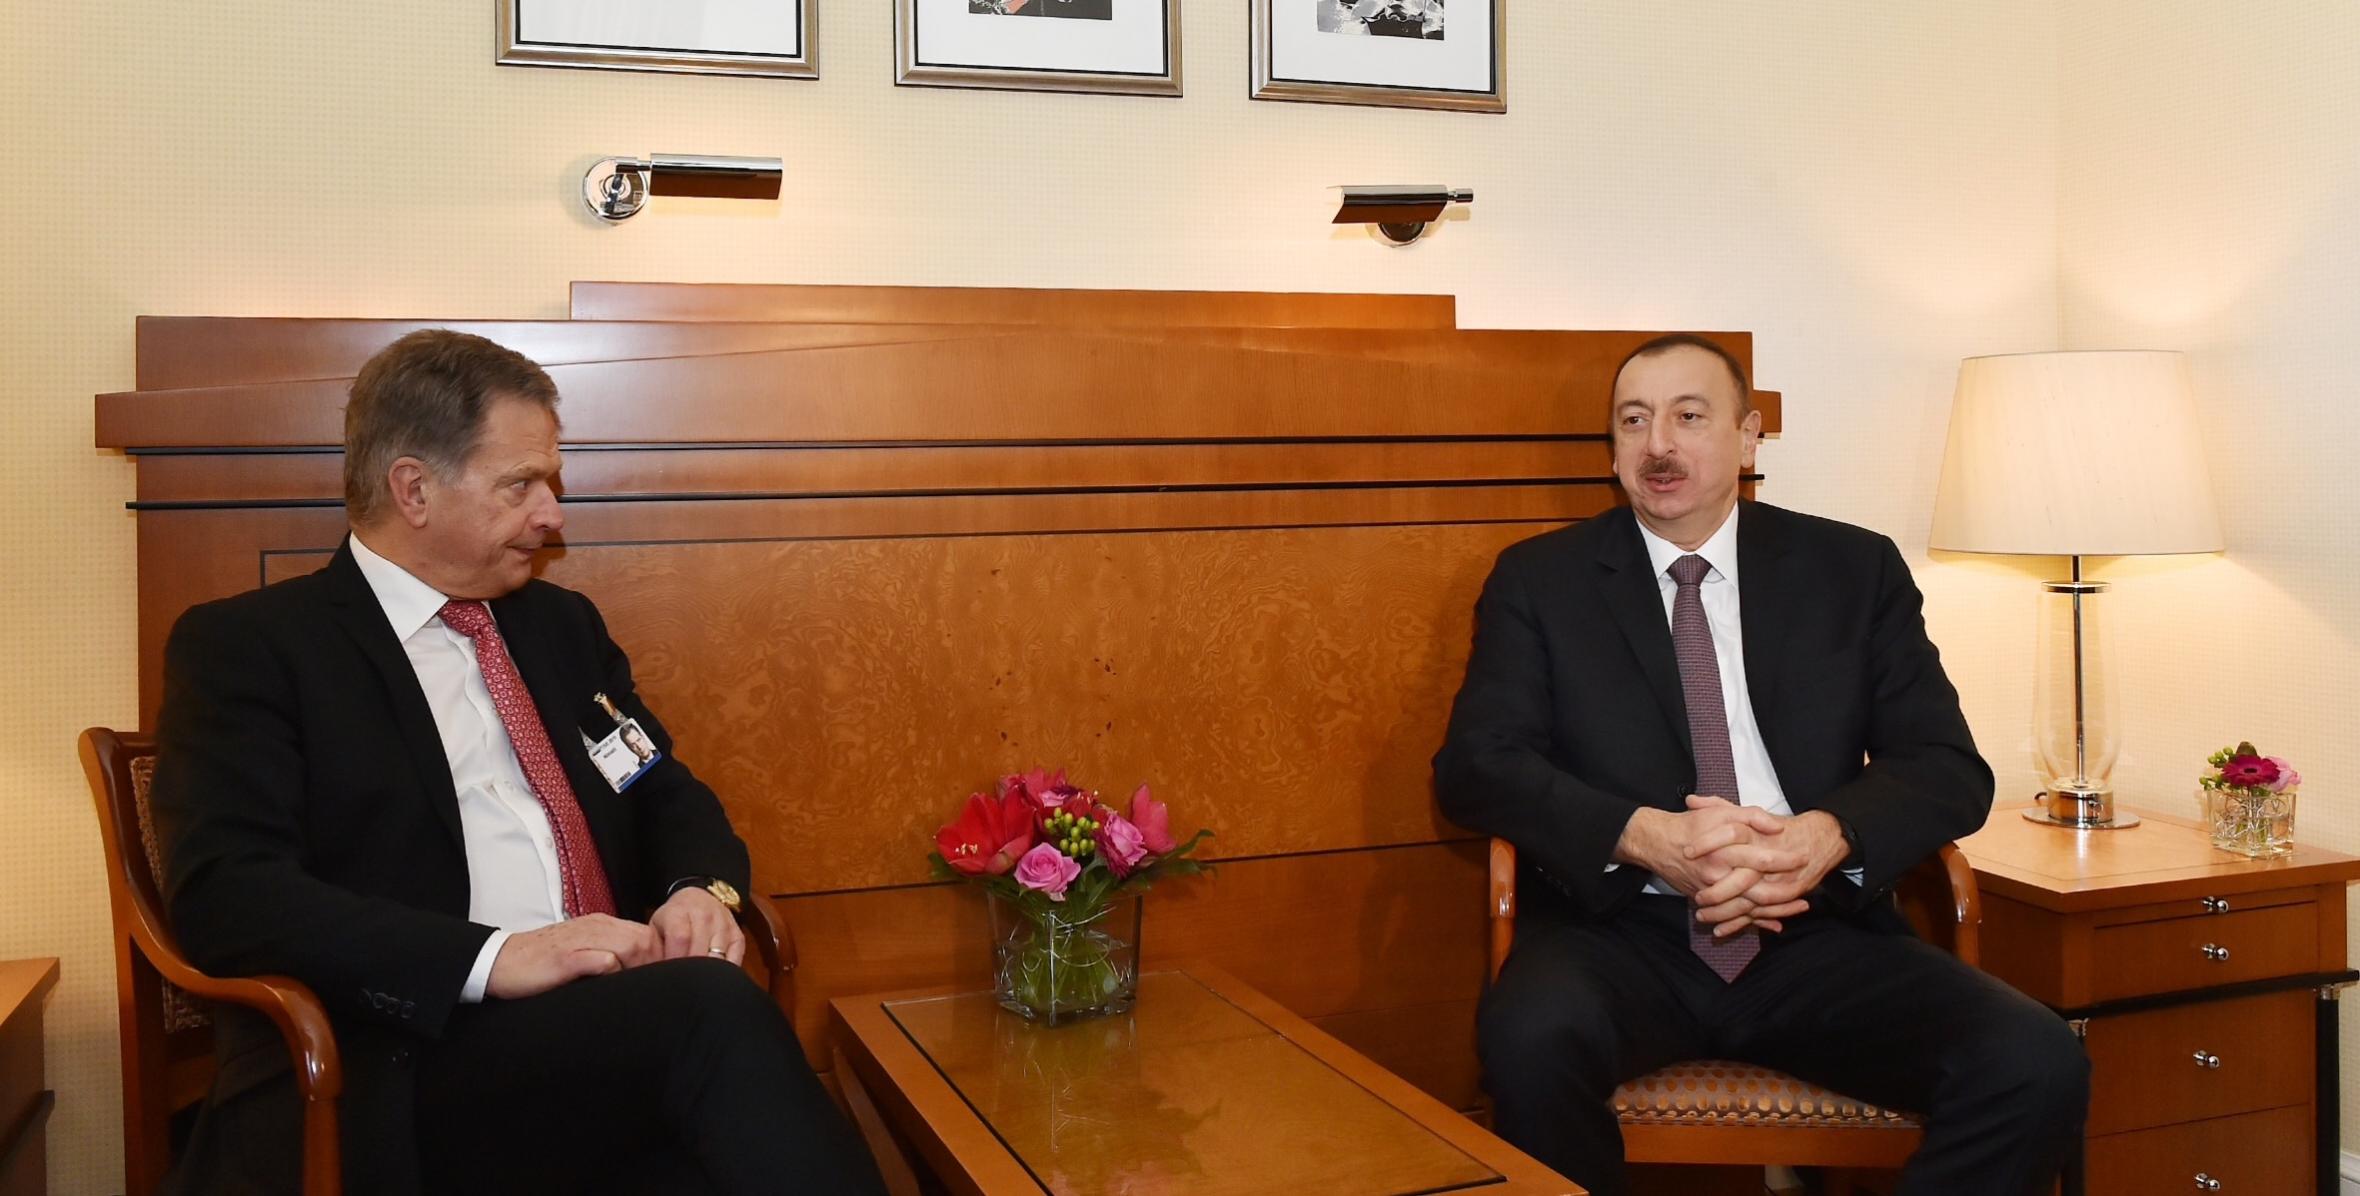 Состоялась встреча Ильхама Алиева и Президента Финляндии Саули Ниинистё в Мюнхене